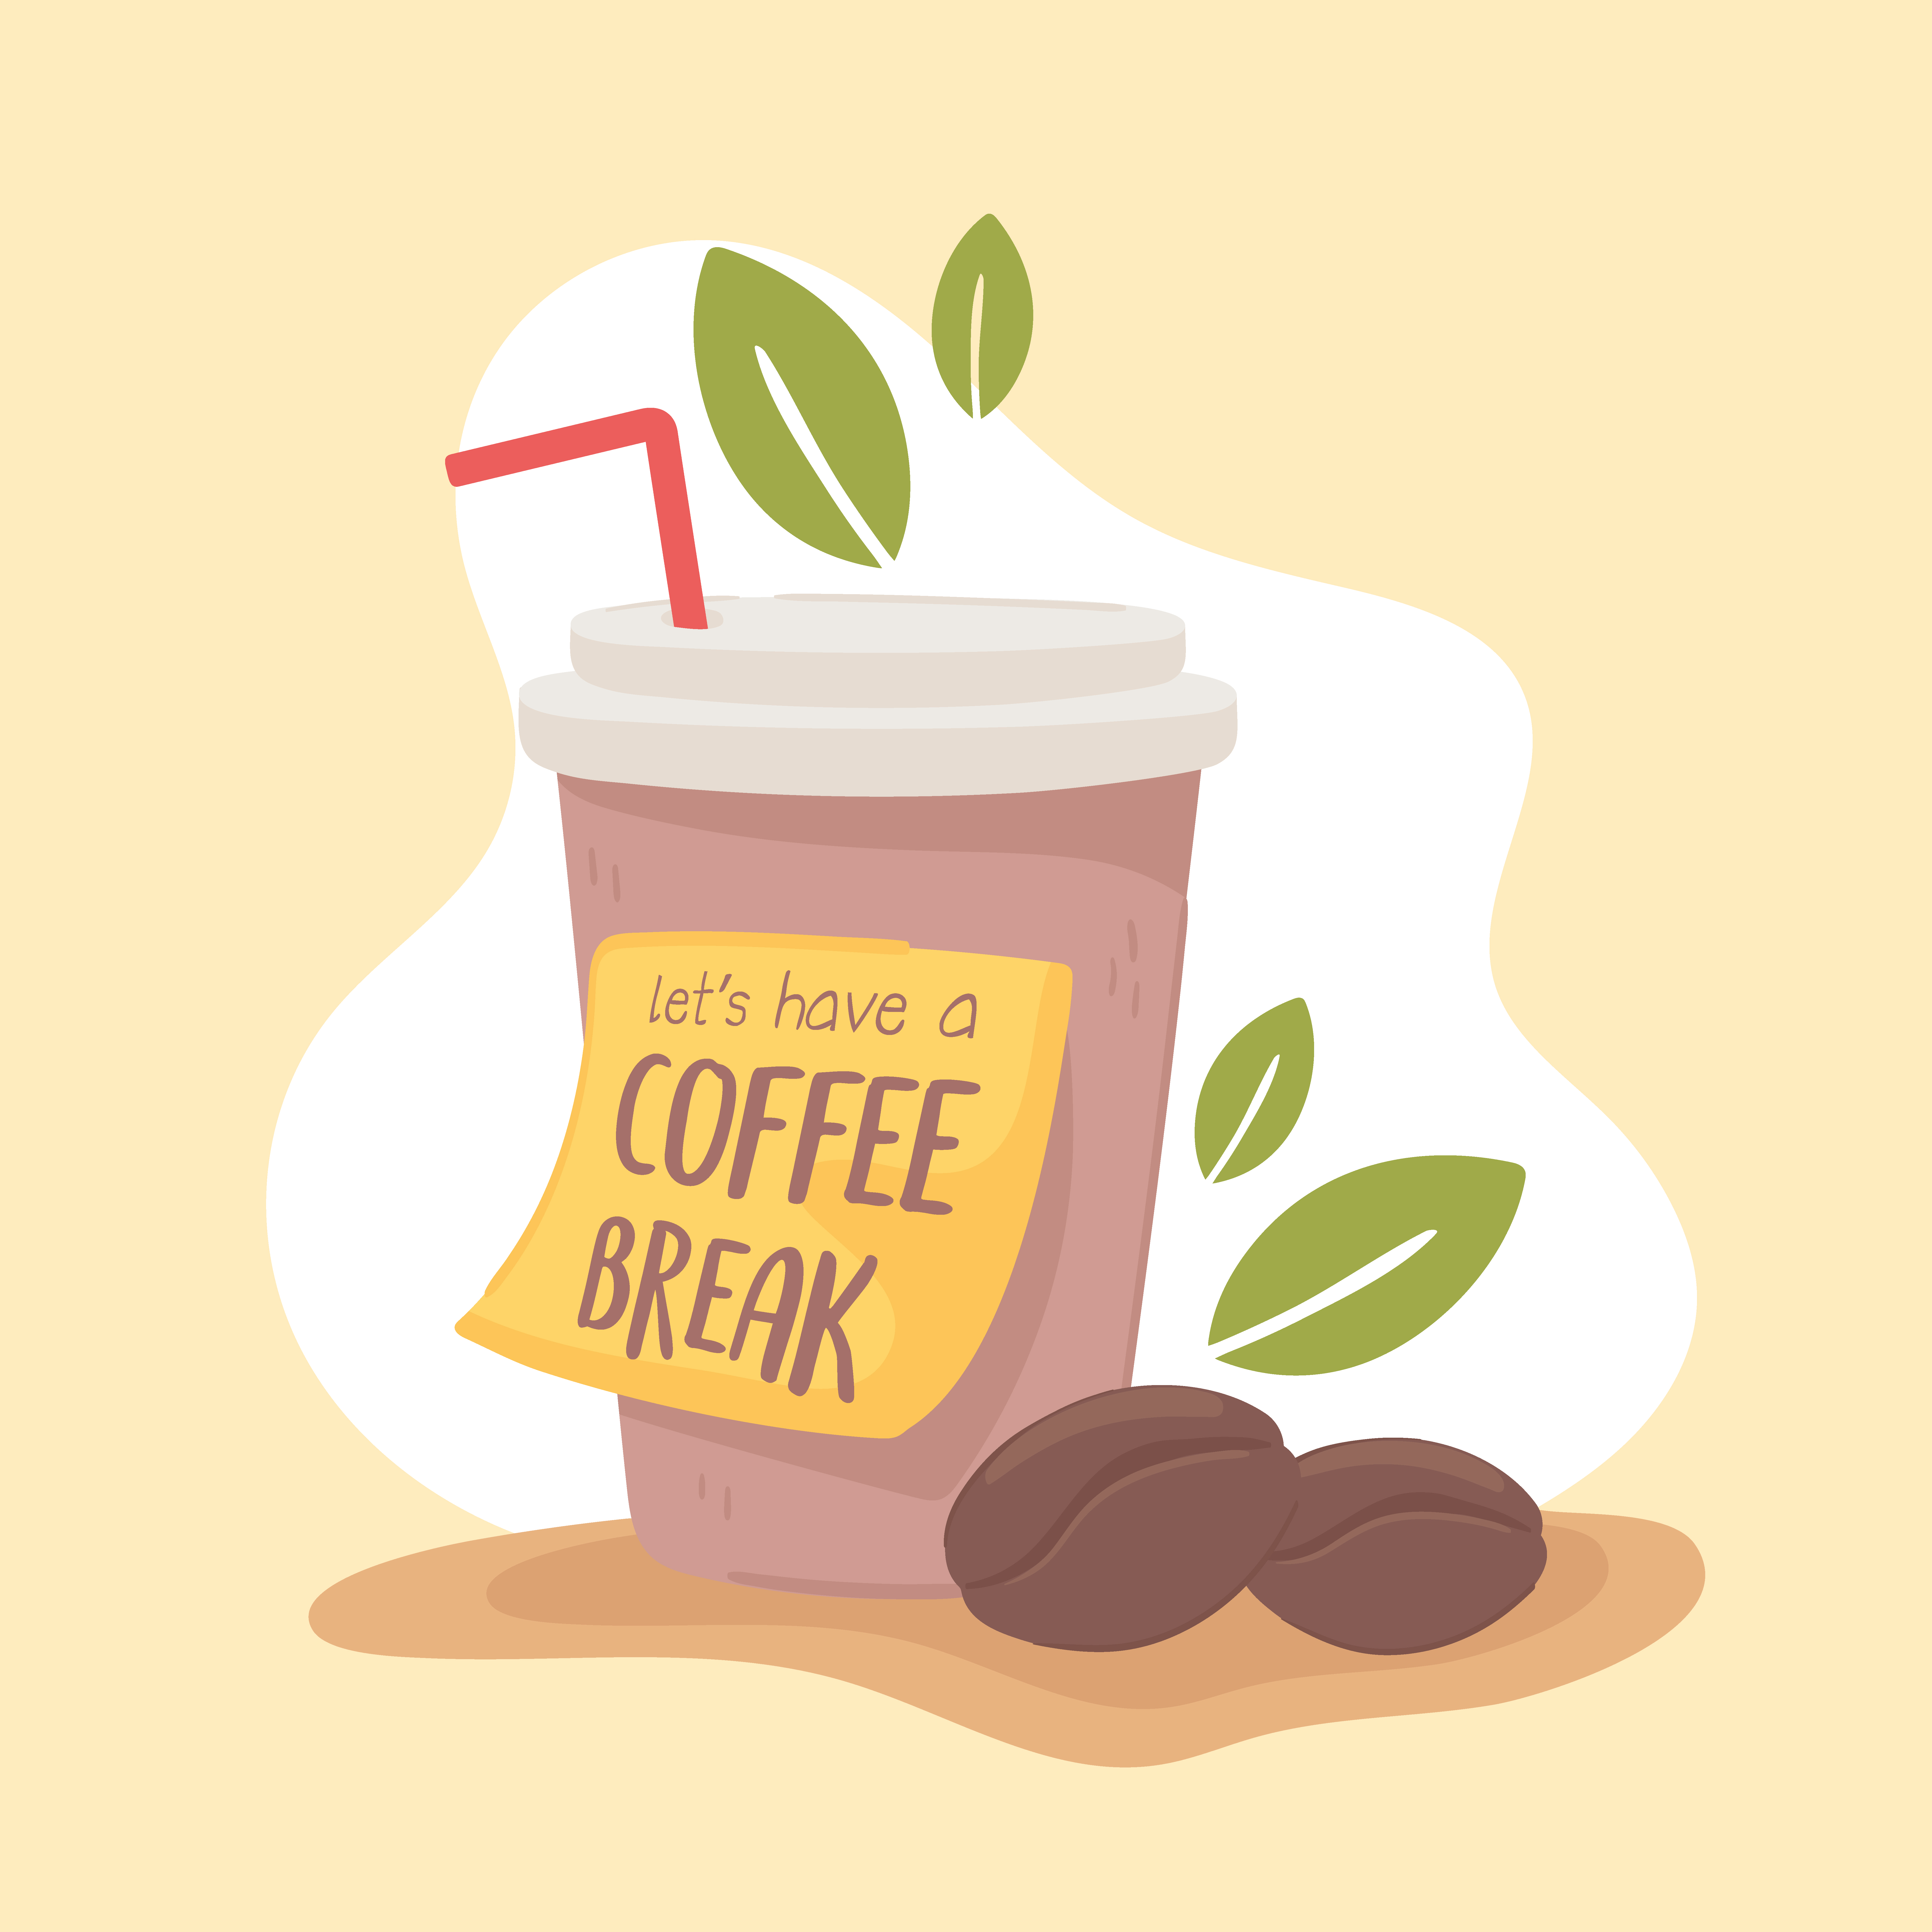 take a coffee break